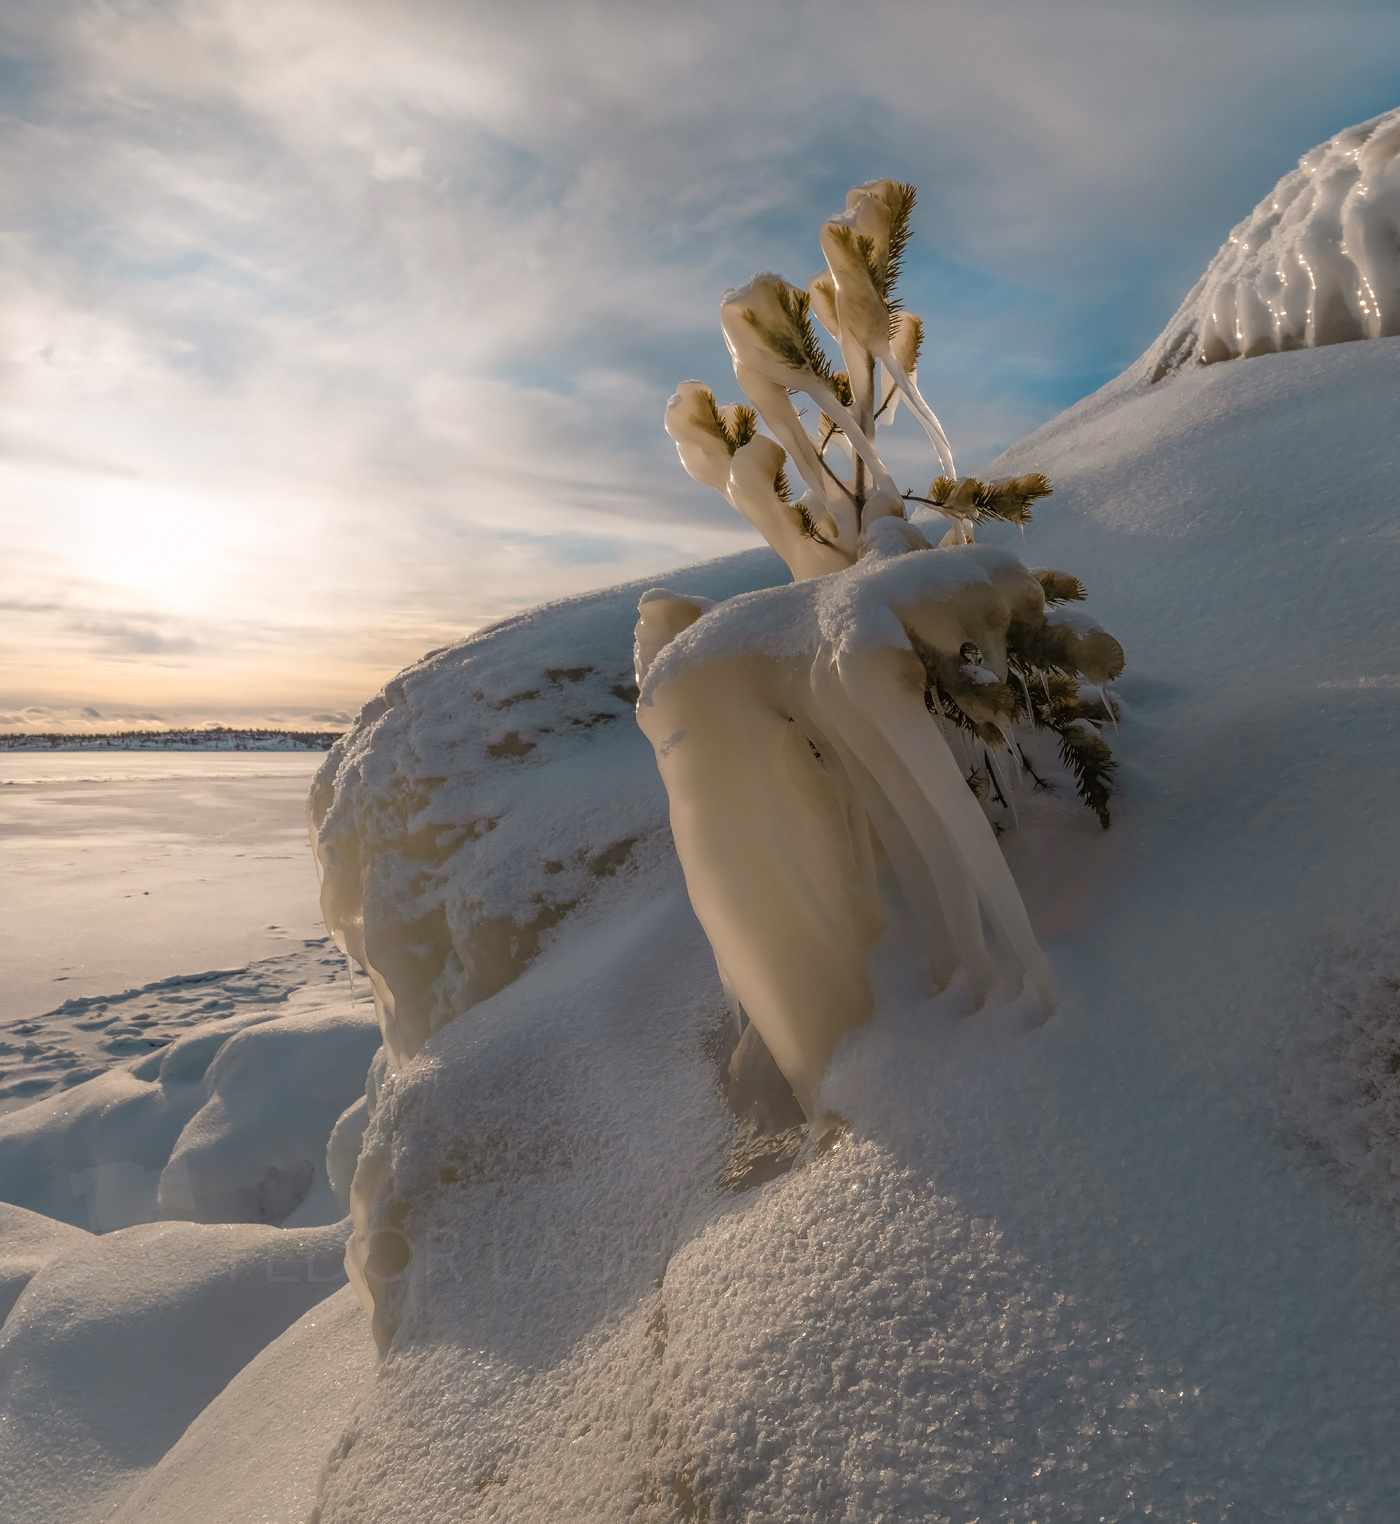 Наледь Ладожское озеро Карелия зима наледь сосна дерево деревце лёд снег ледяной берег pentax645z pentaxrussia pentax